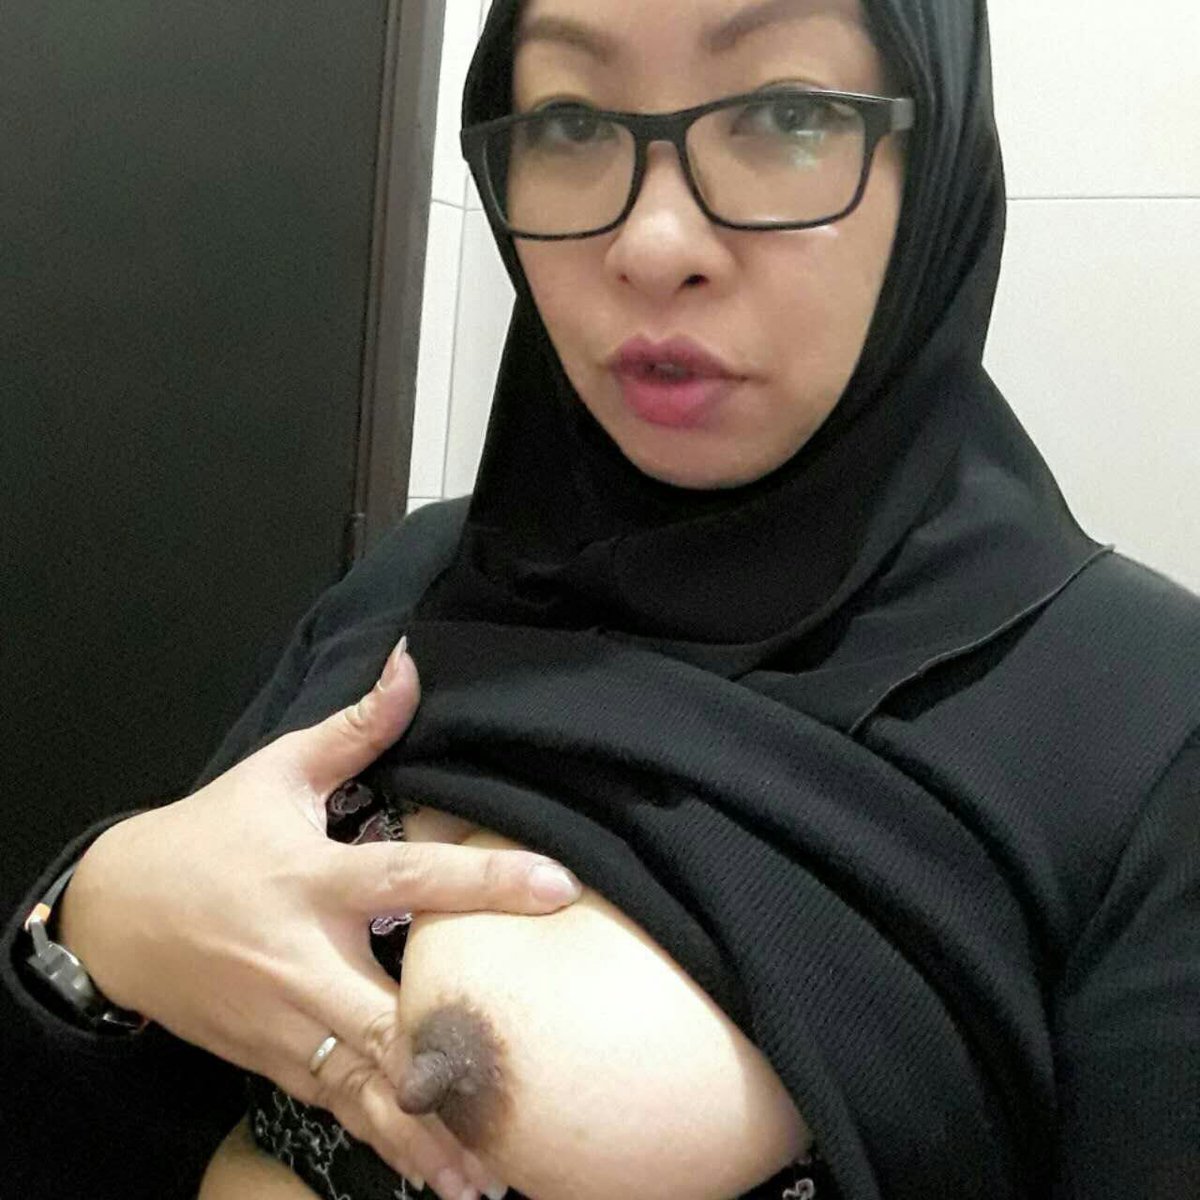 Hijab girls sex photos